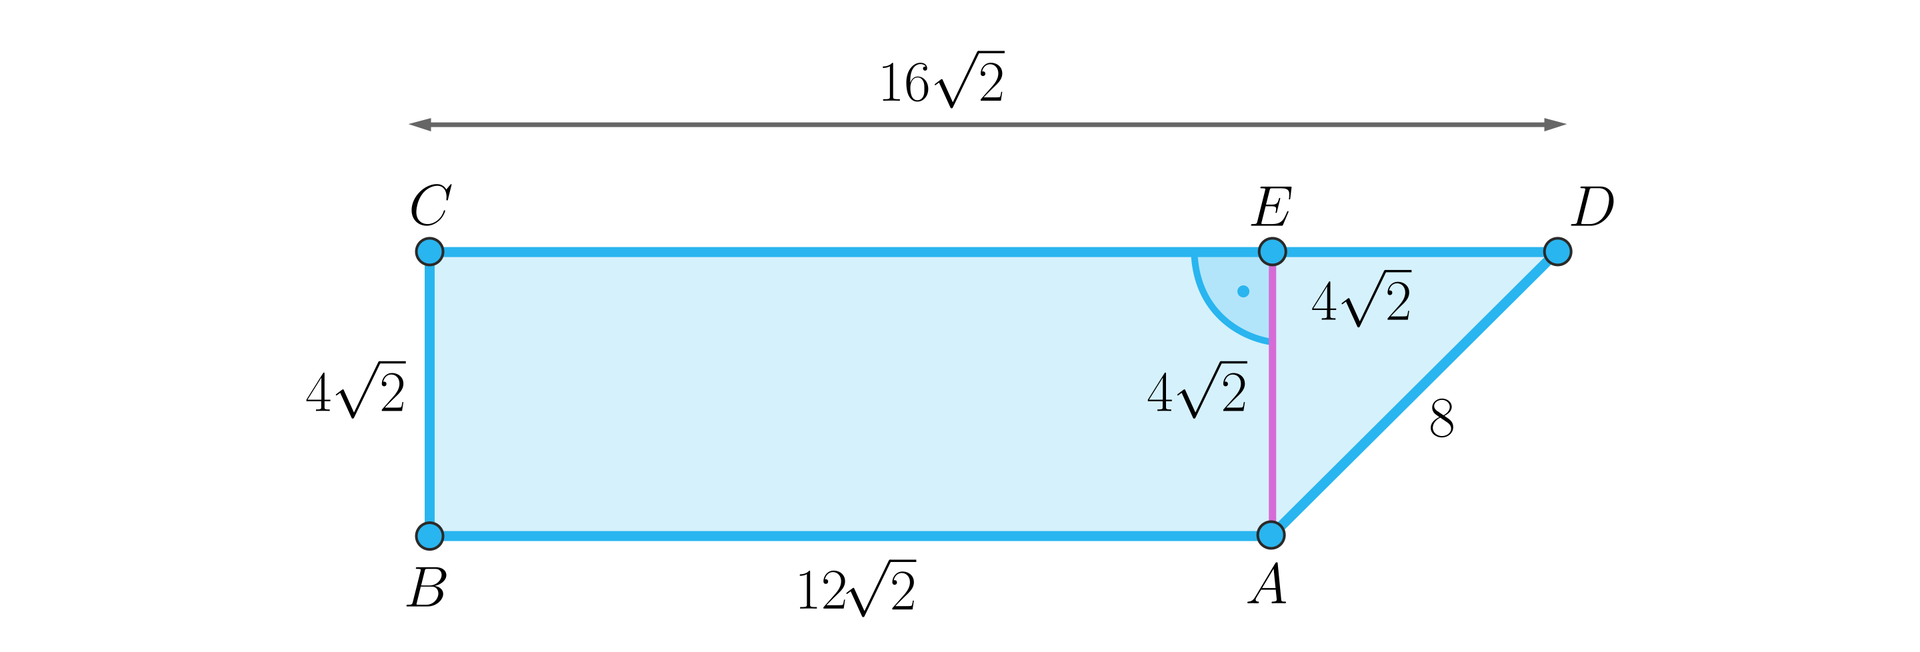 Rysunek przedstawia trapez prostokątny A B C D. Górna podstawa trapezu jest dłuższa, jest to bok C D o długości 16 pierwiastków z dwóch. Dolna postawa jest krótsza, jest to bok A B o długości 12 pierwiastków z dwóch. Przy punkcie E zaznaczono kąt prosty. Z dolnego prawego wierzchołka figury poprowadzono w górę wysokość A E o długości 4 pierwiastki z dwóch. Kawałek górnej podstawy, czyli odcinek E D ma długość 4 pierwiastki z dwóch. Ukośne ramię trapezu, czyli bok A D ma długość 8, a pionowe ramię trapezu ma taką samą długość jak wysokość figury, czyli 4 pierwiastki z dwóch.